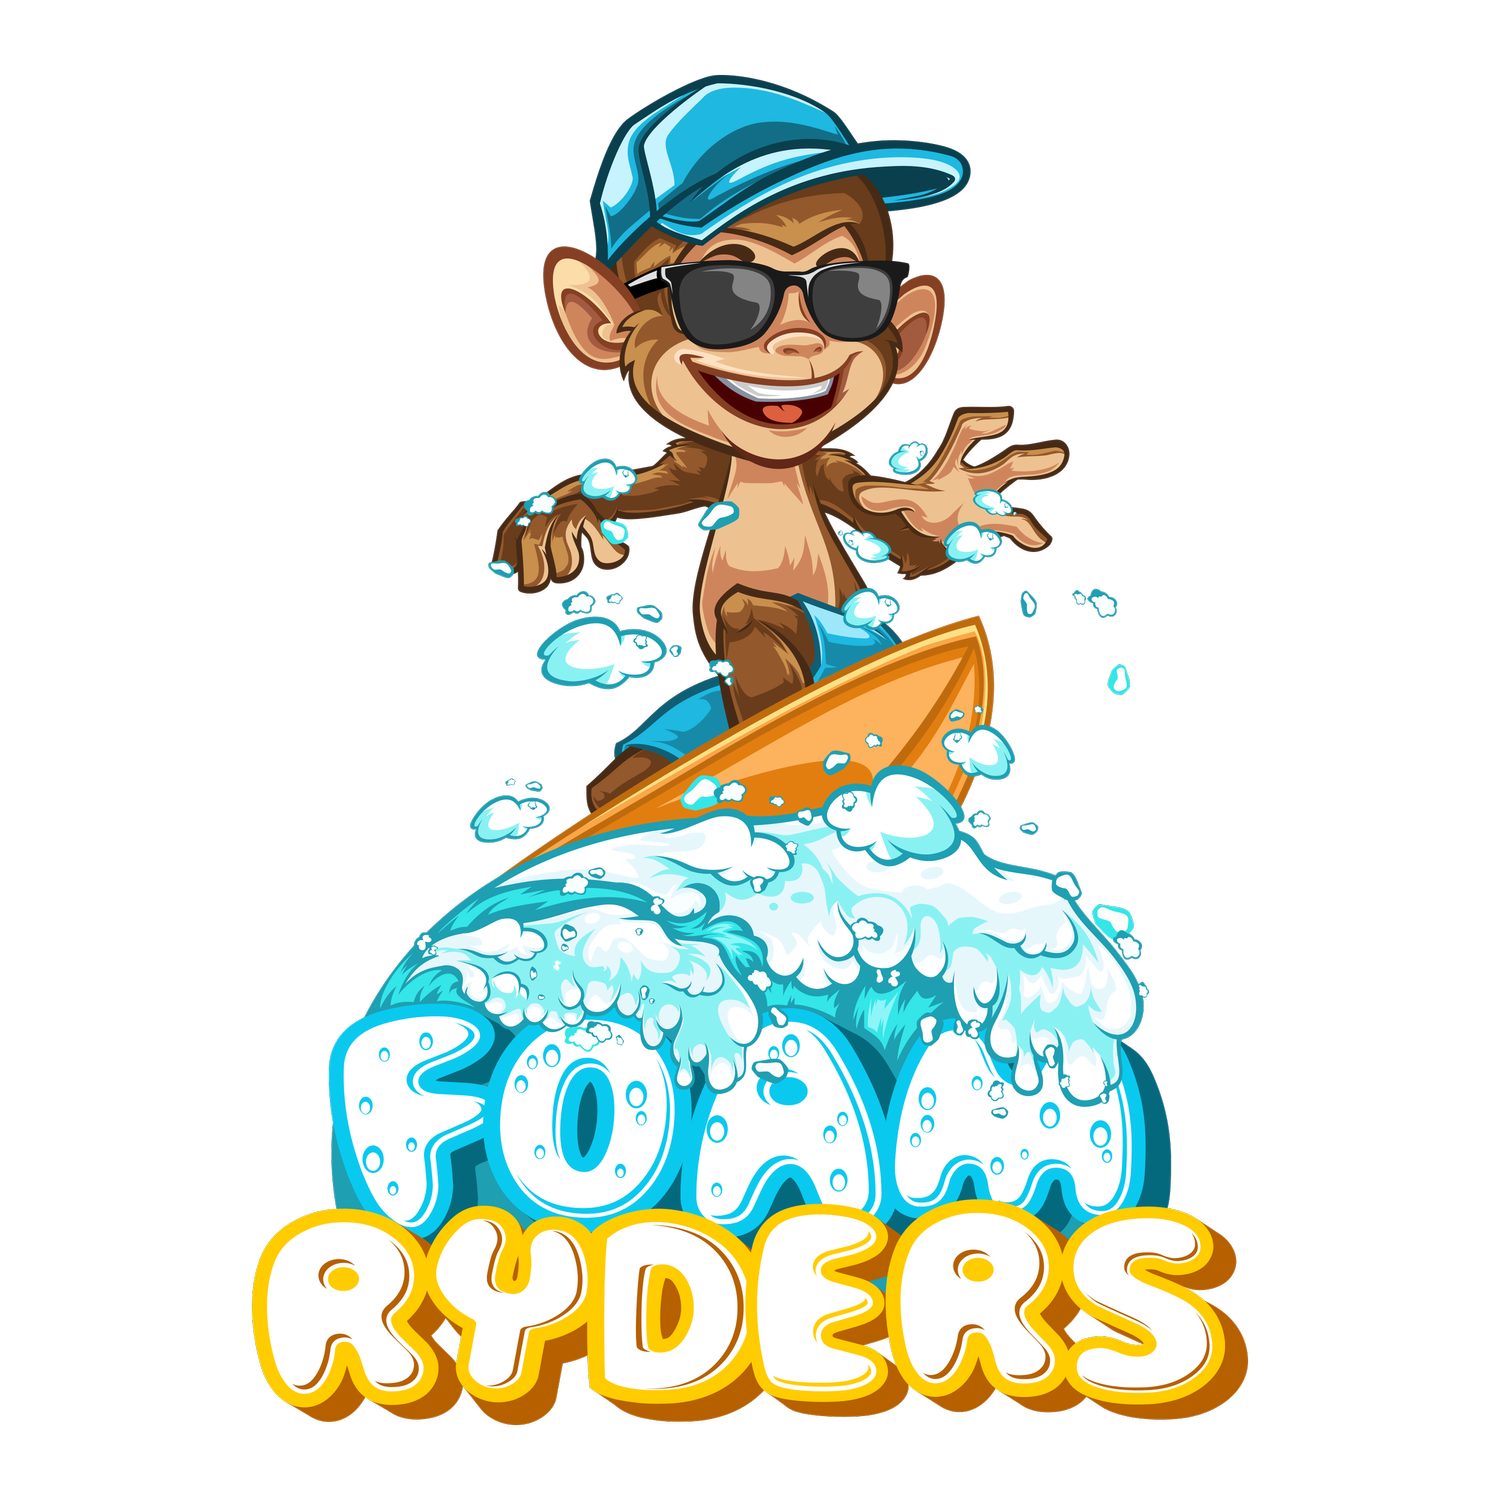 Foam Ryders